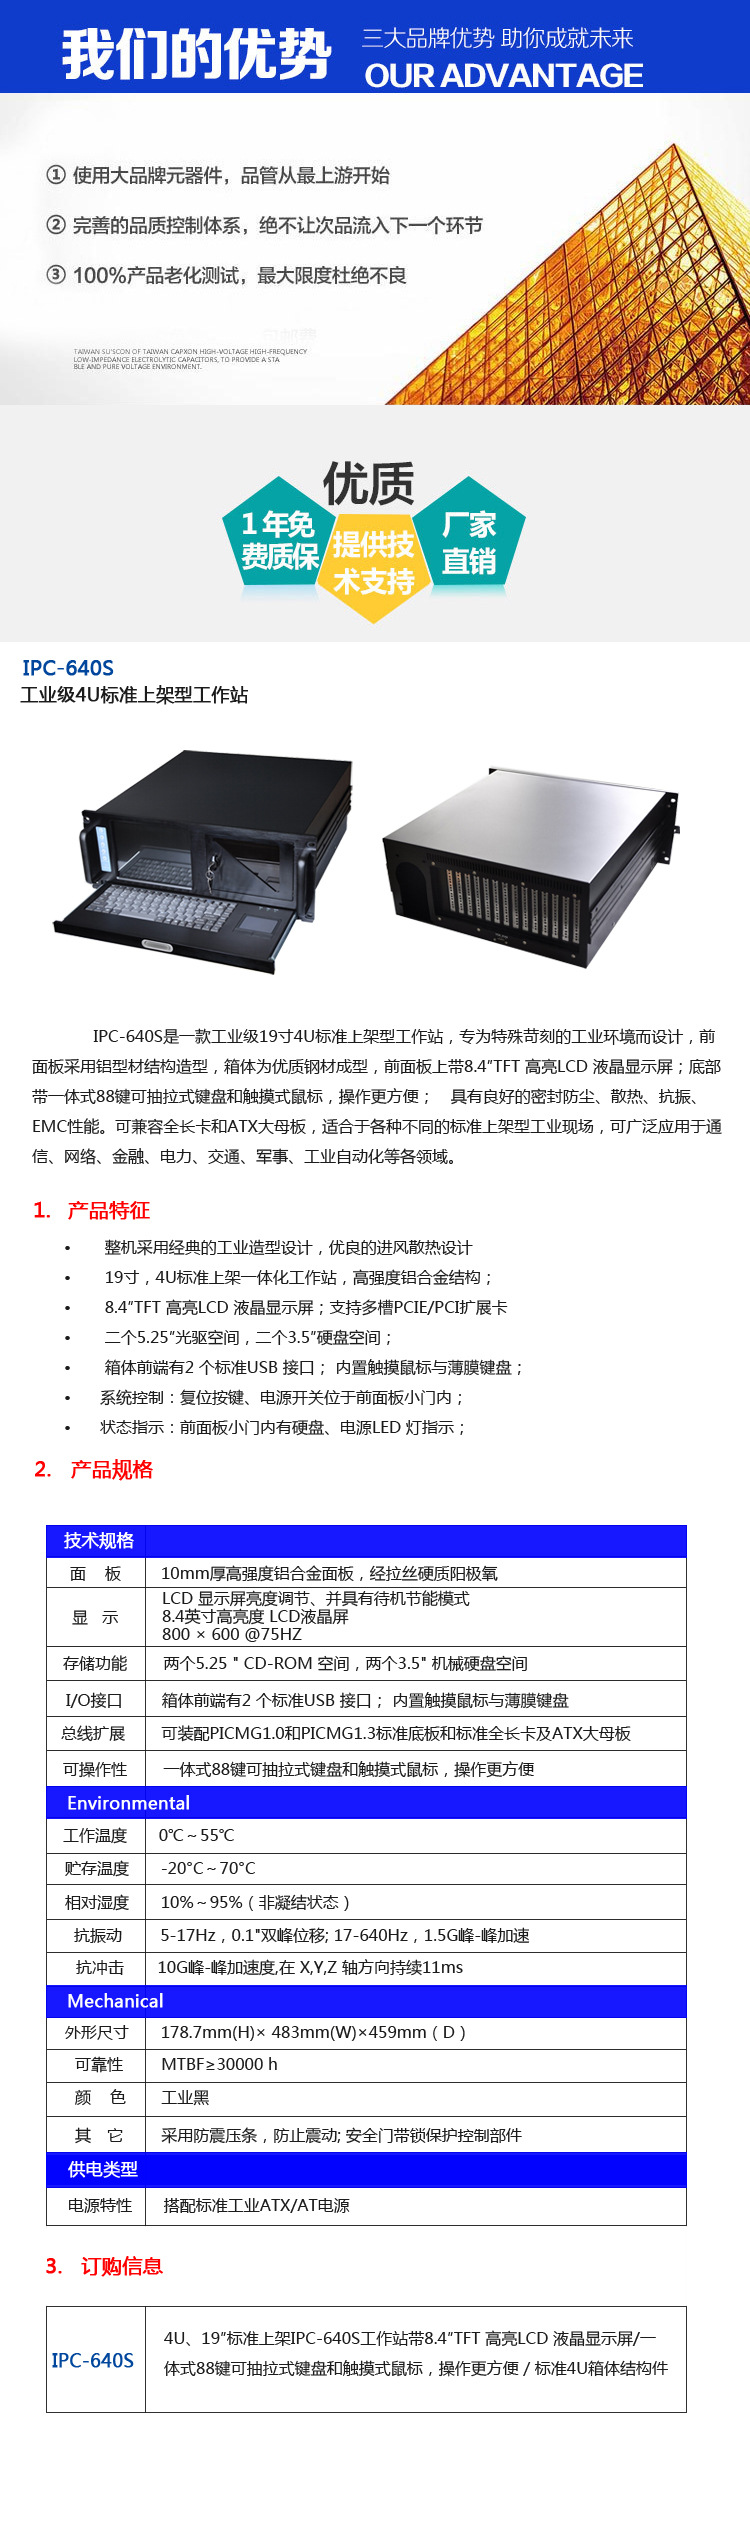 工控厂家直销4U上架一体化工作站带8寸工业屏键盘工控机IPC-640S示例图1